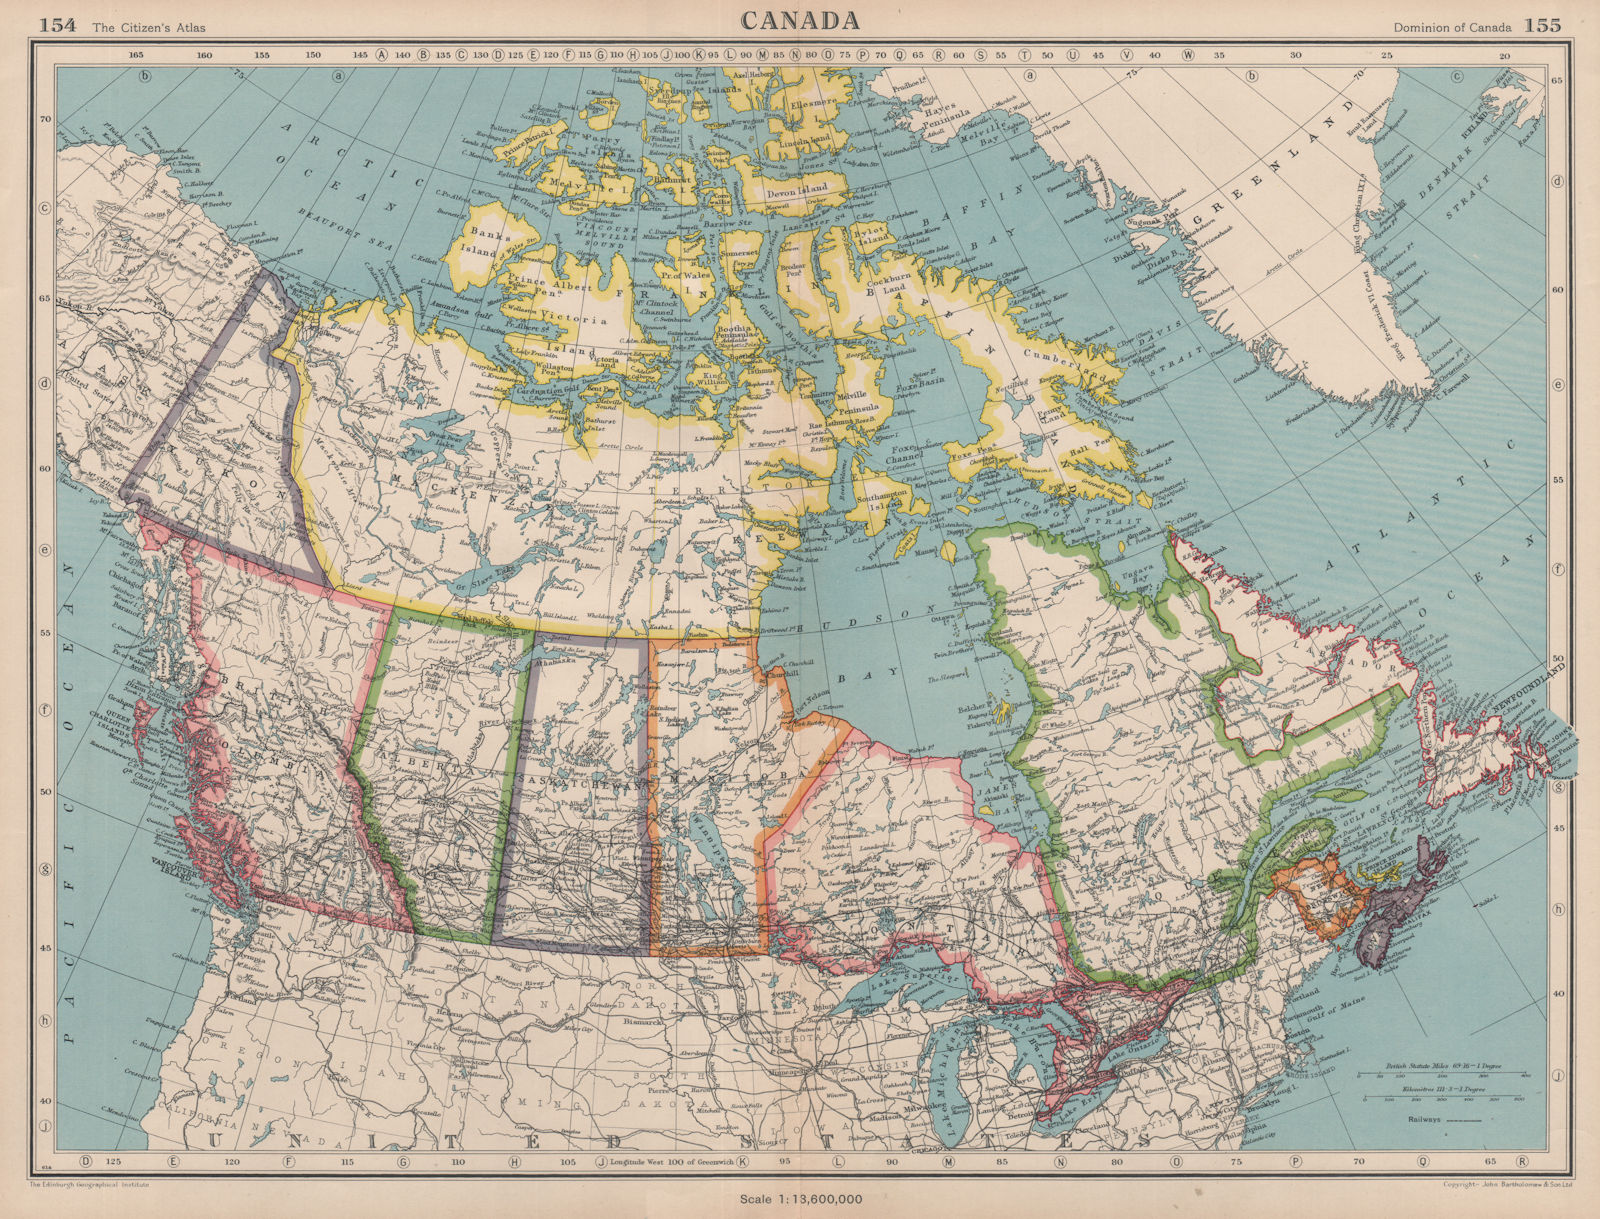 CANADA. showing provinces & railways. BARTHOLOMEW 1944 old vintage map chart